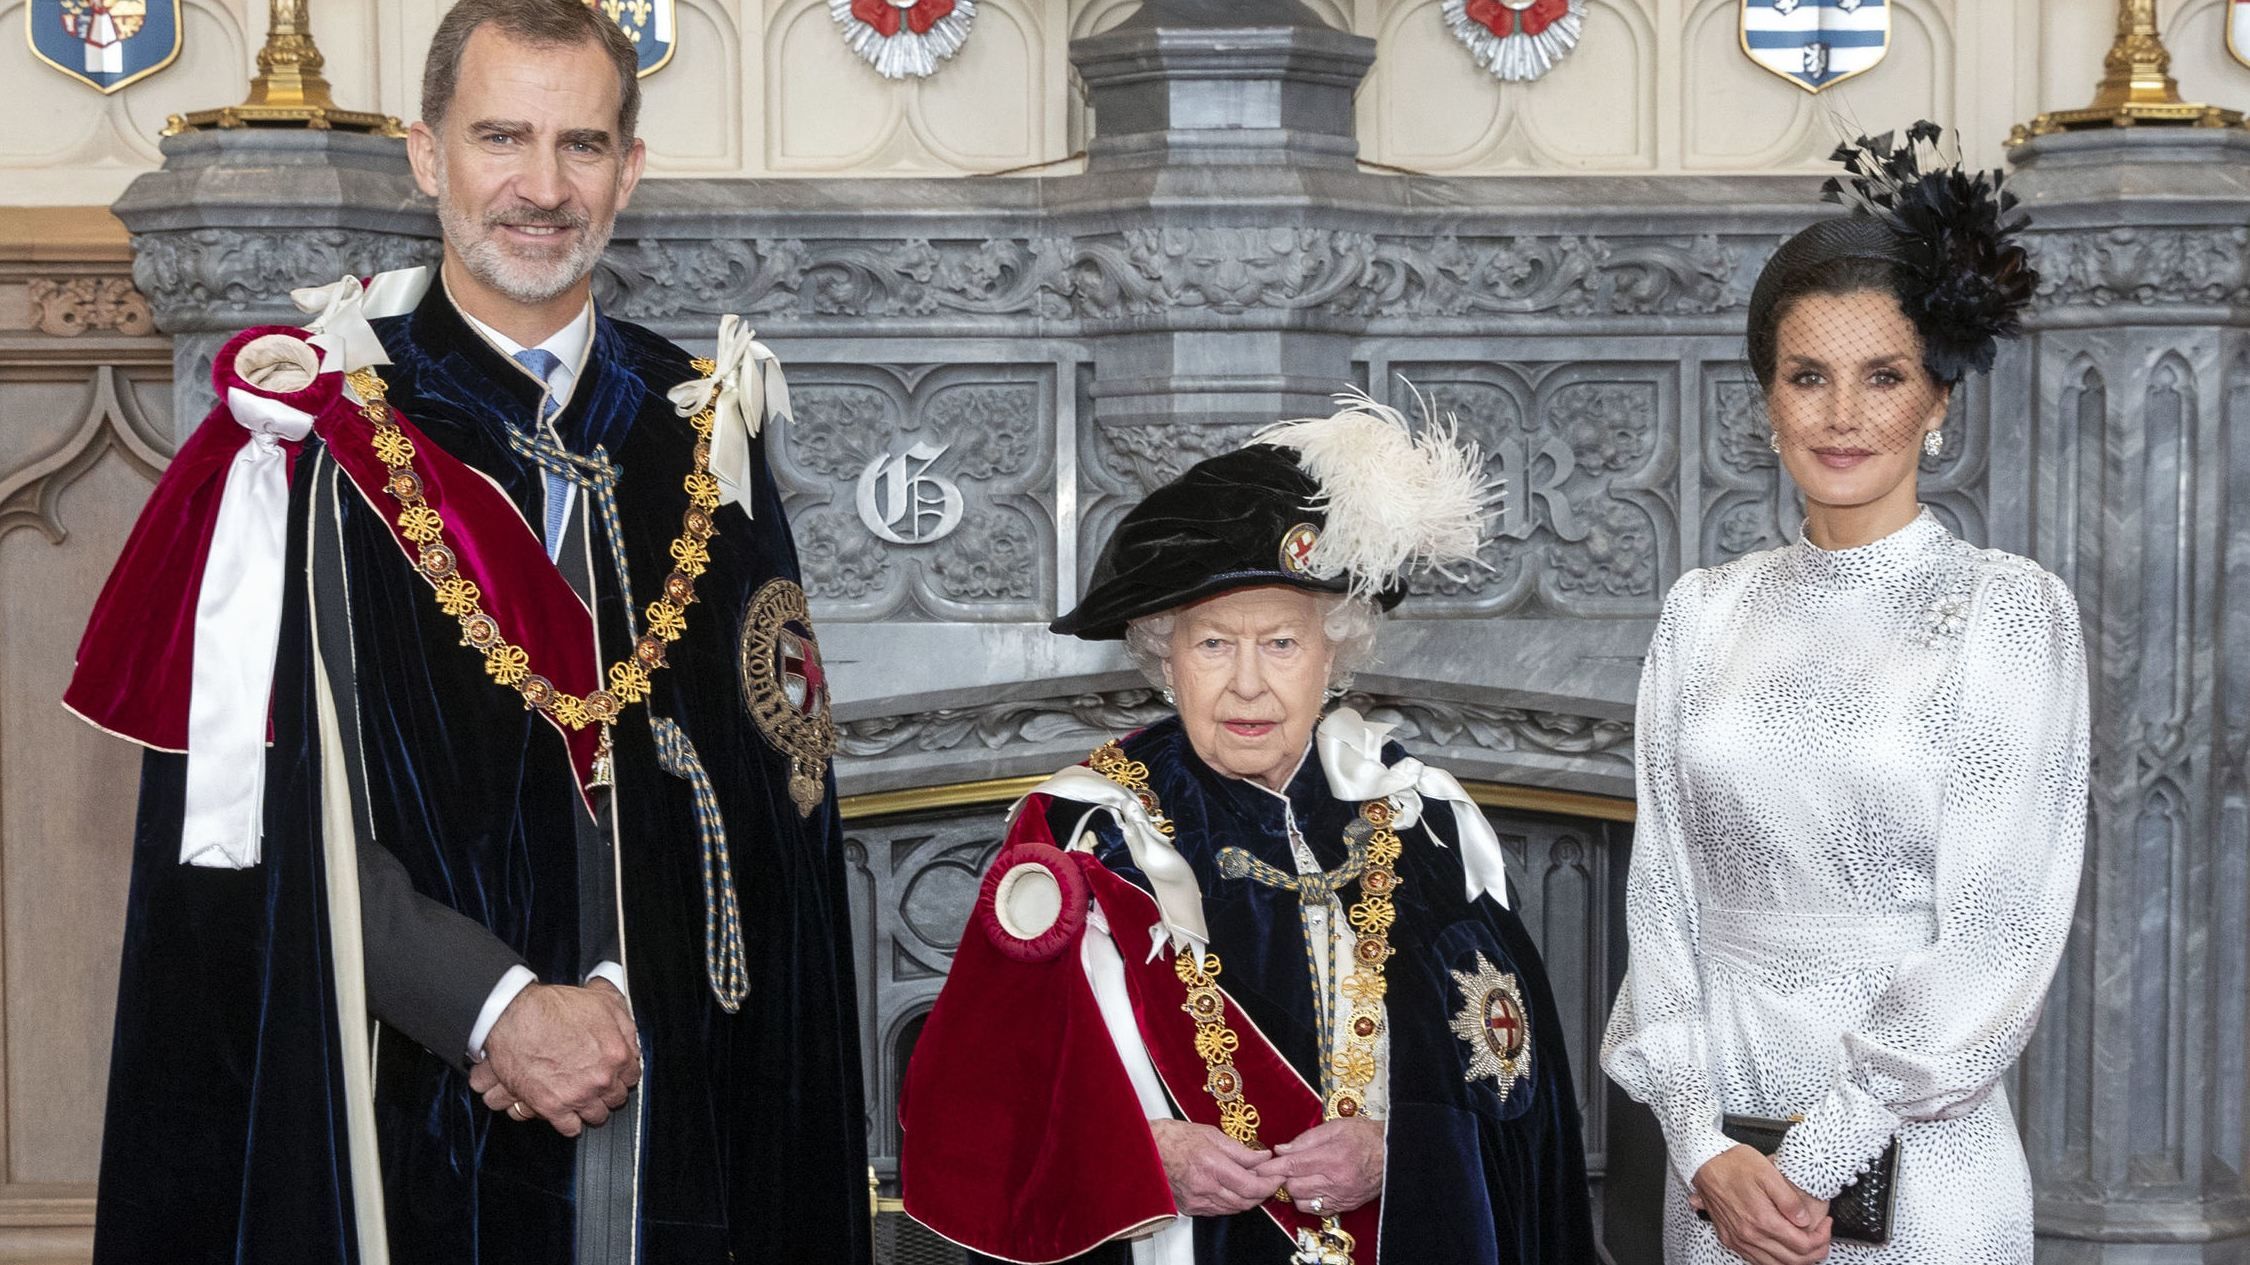 Образ на миллион: королева Летиция засветила сумку за 1400 евро на встрече с Елизаветой II